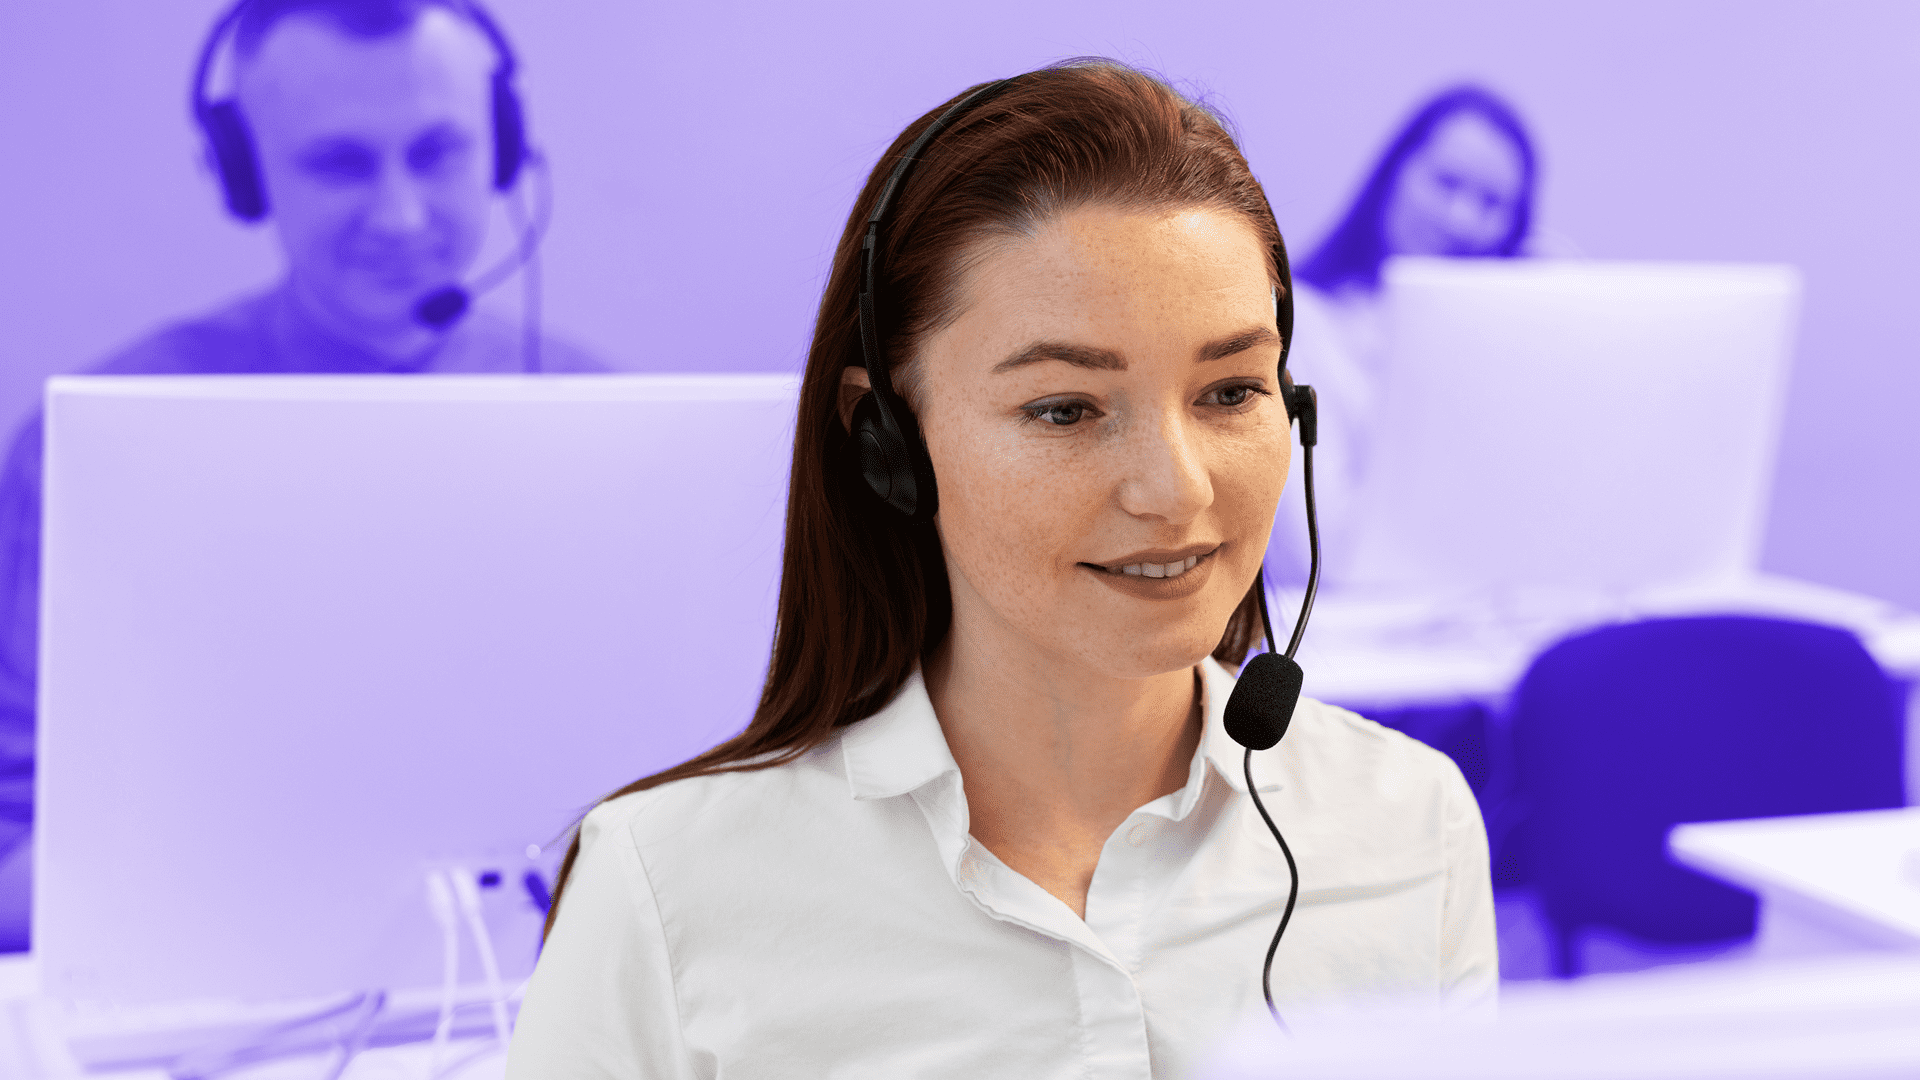 Mujer sonriente trabajando en un call center usando un automarcador Enreach